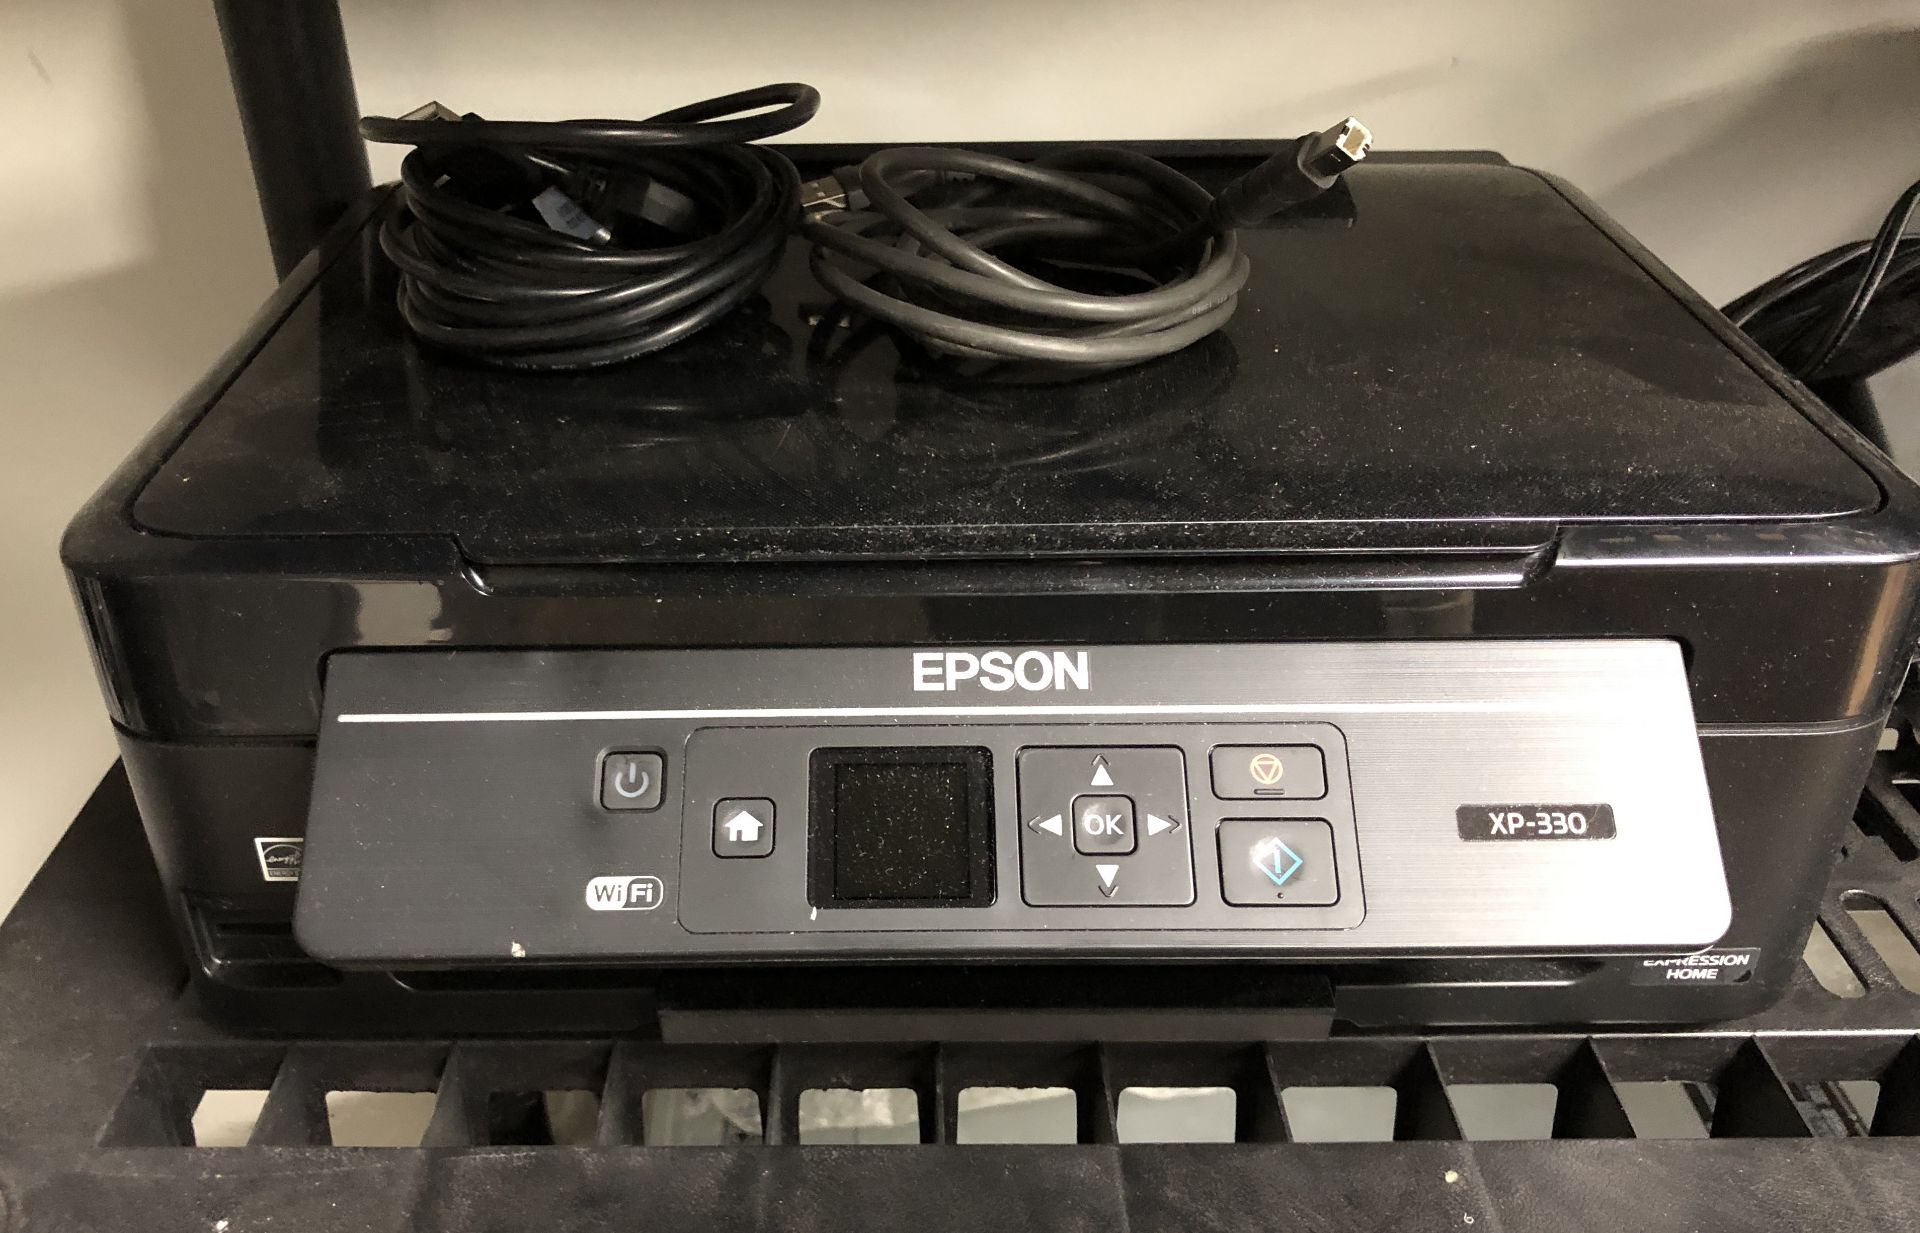 EPSON XP-330 PRINTER